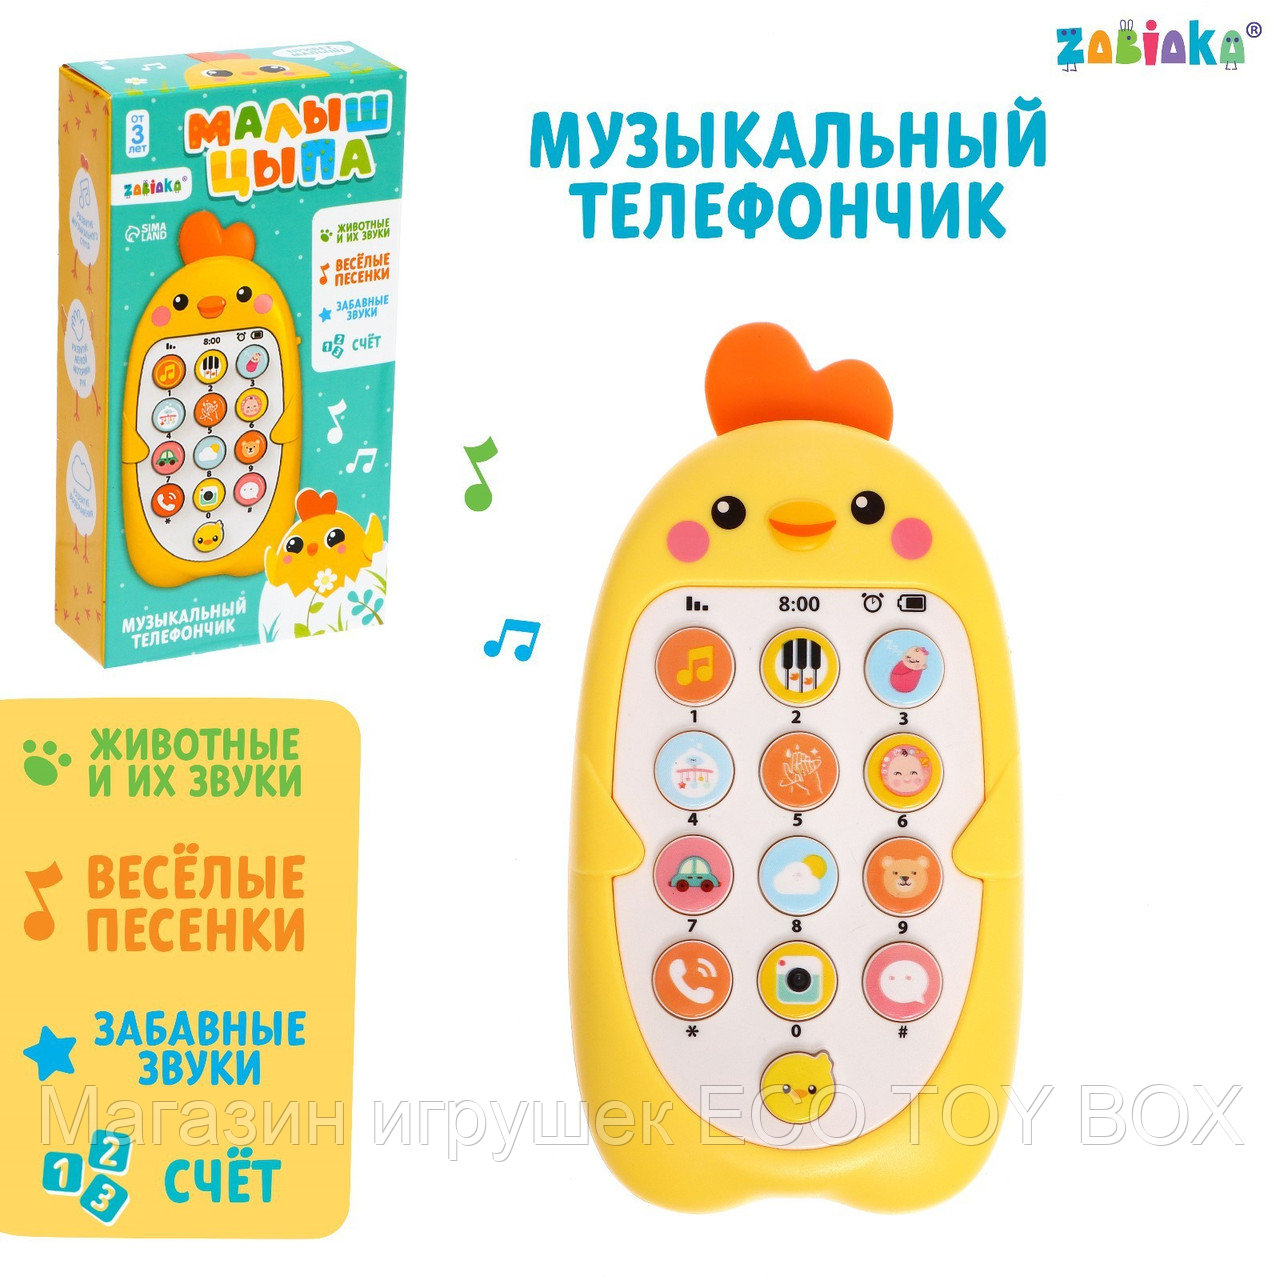 Музыкальный телефончик «Малыш Цыпа», звук, цвет жёлтый, фото 1